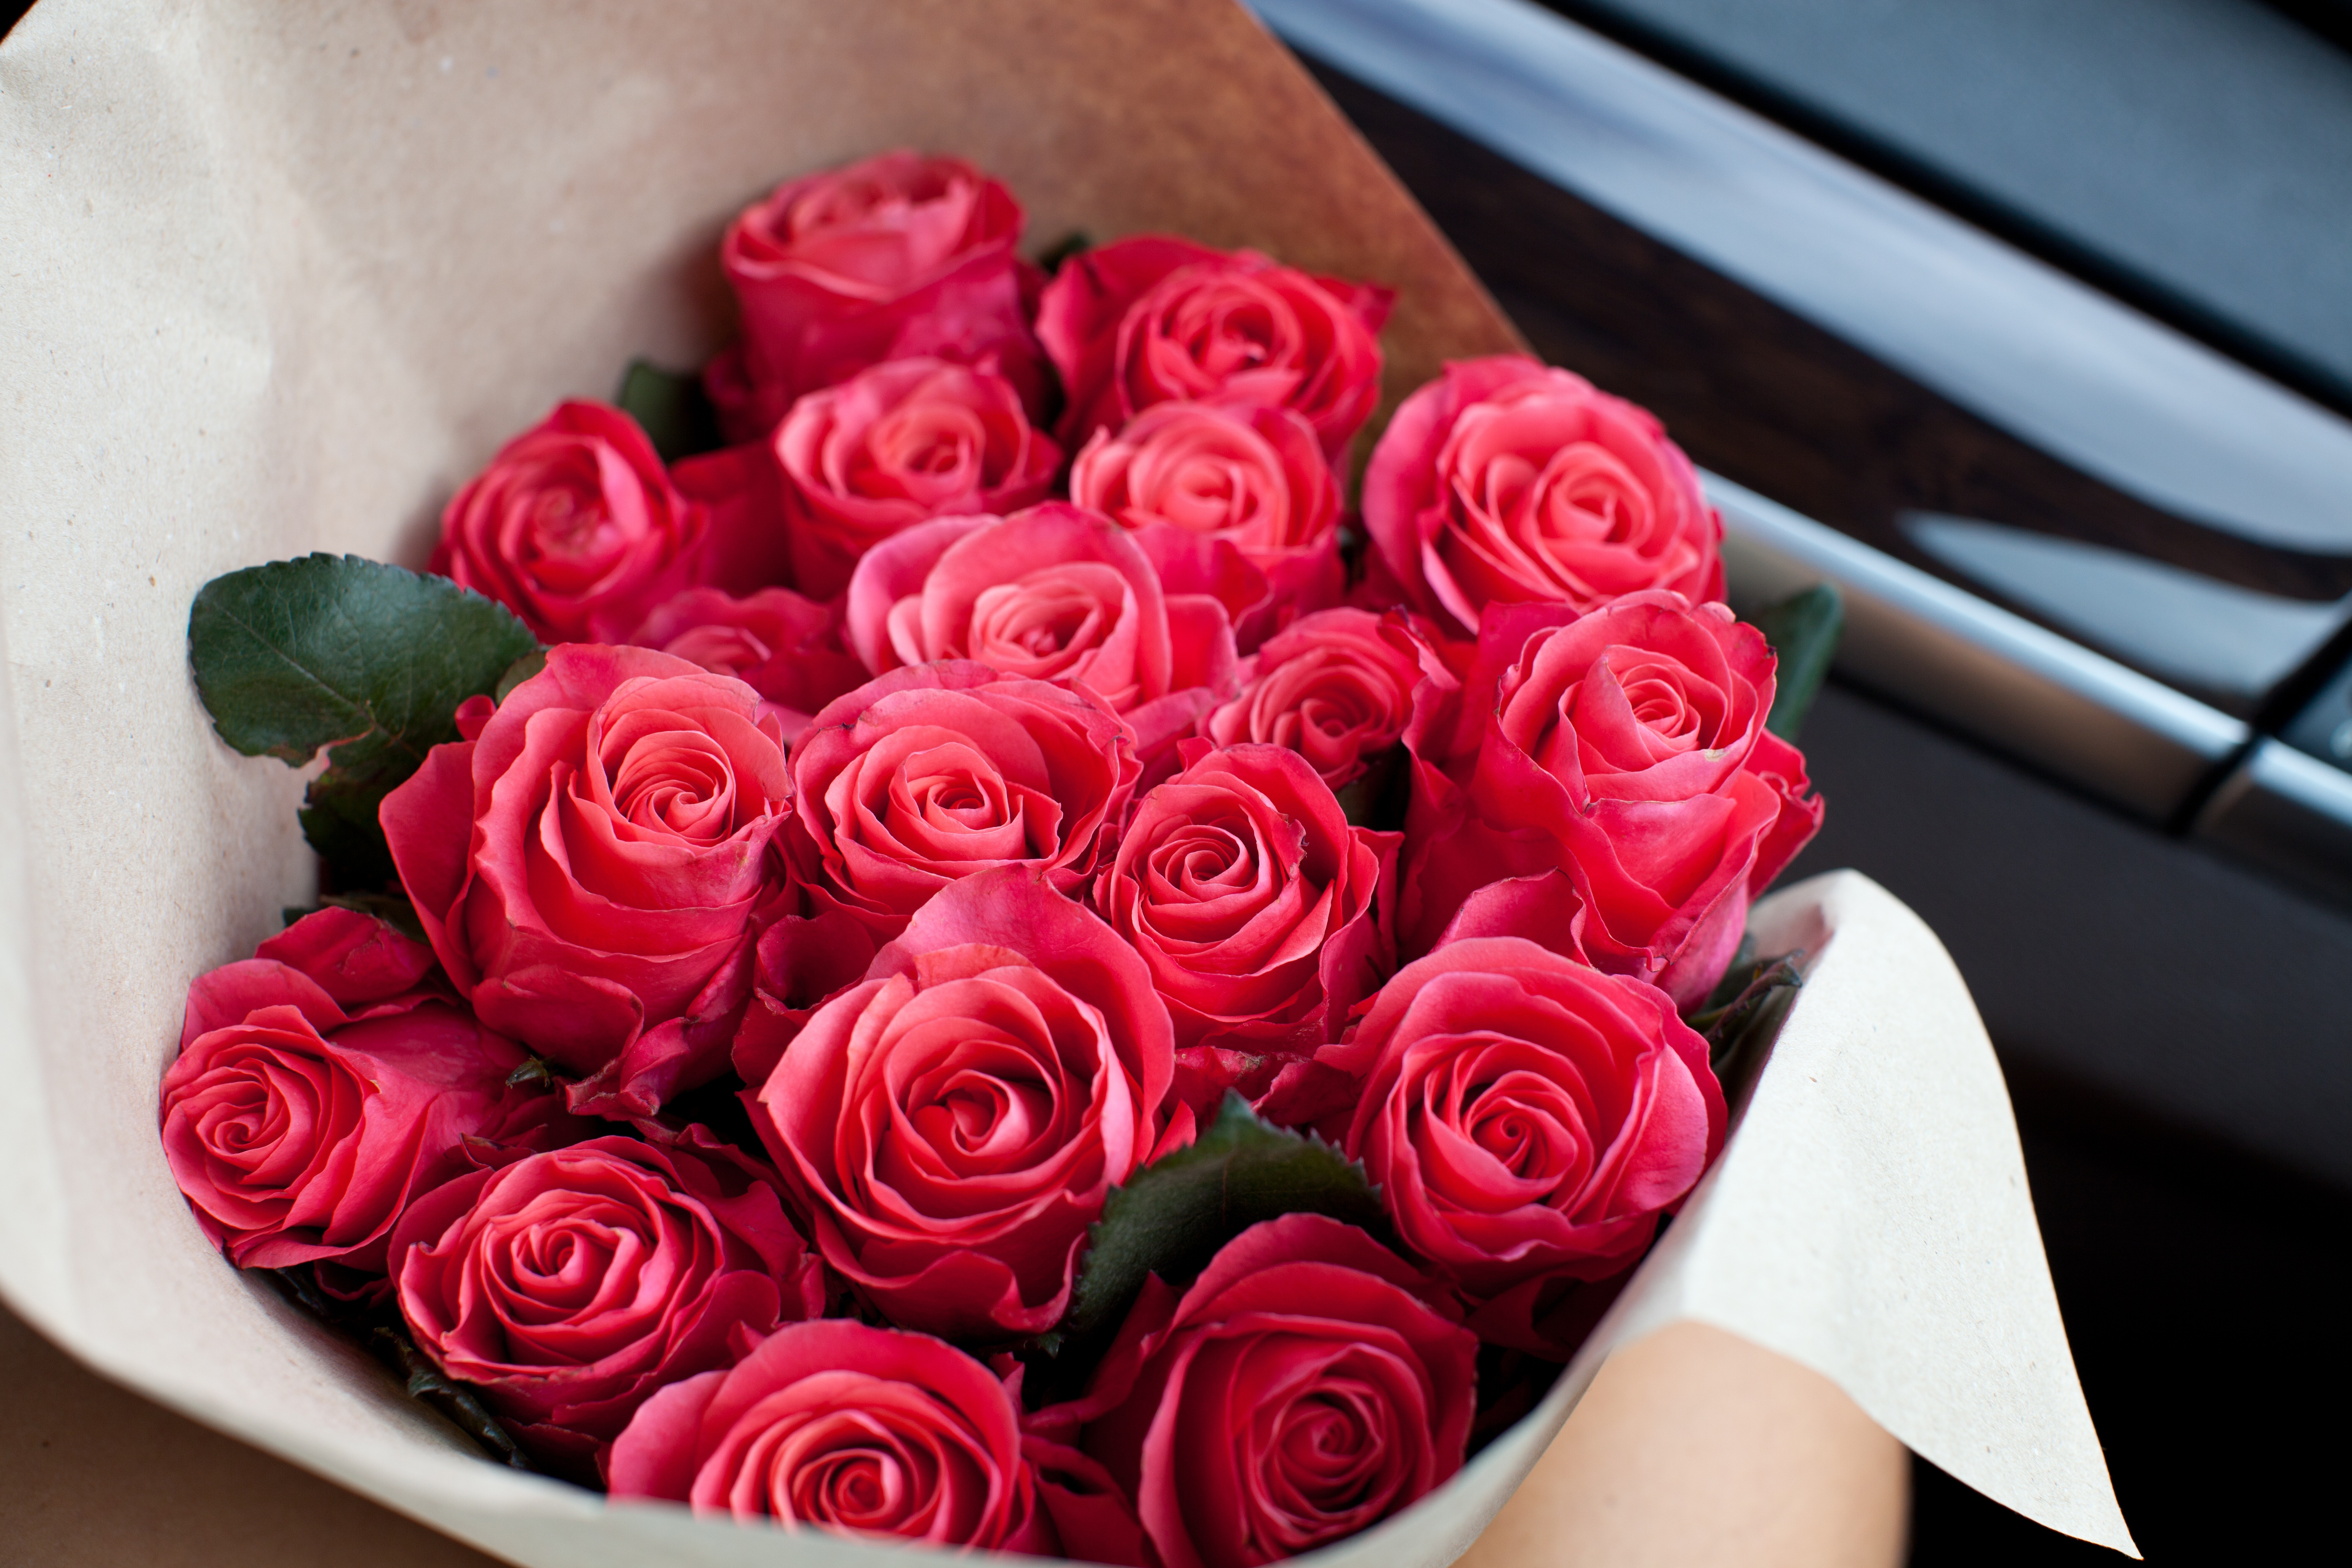 Роз оо. Букет роз. Шикарный букет из роз. Красивый букет красных роз. Букет розовых роз.